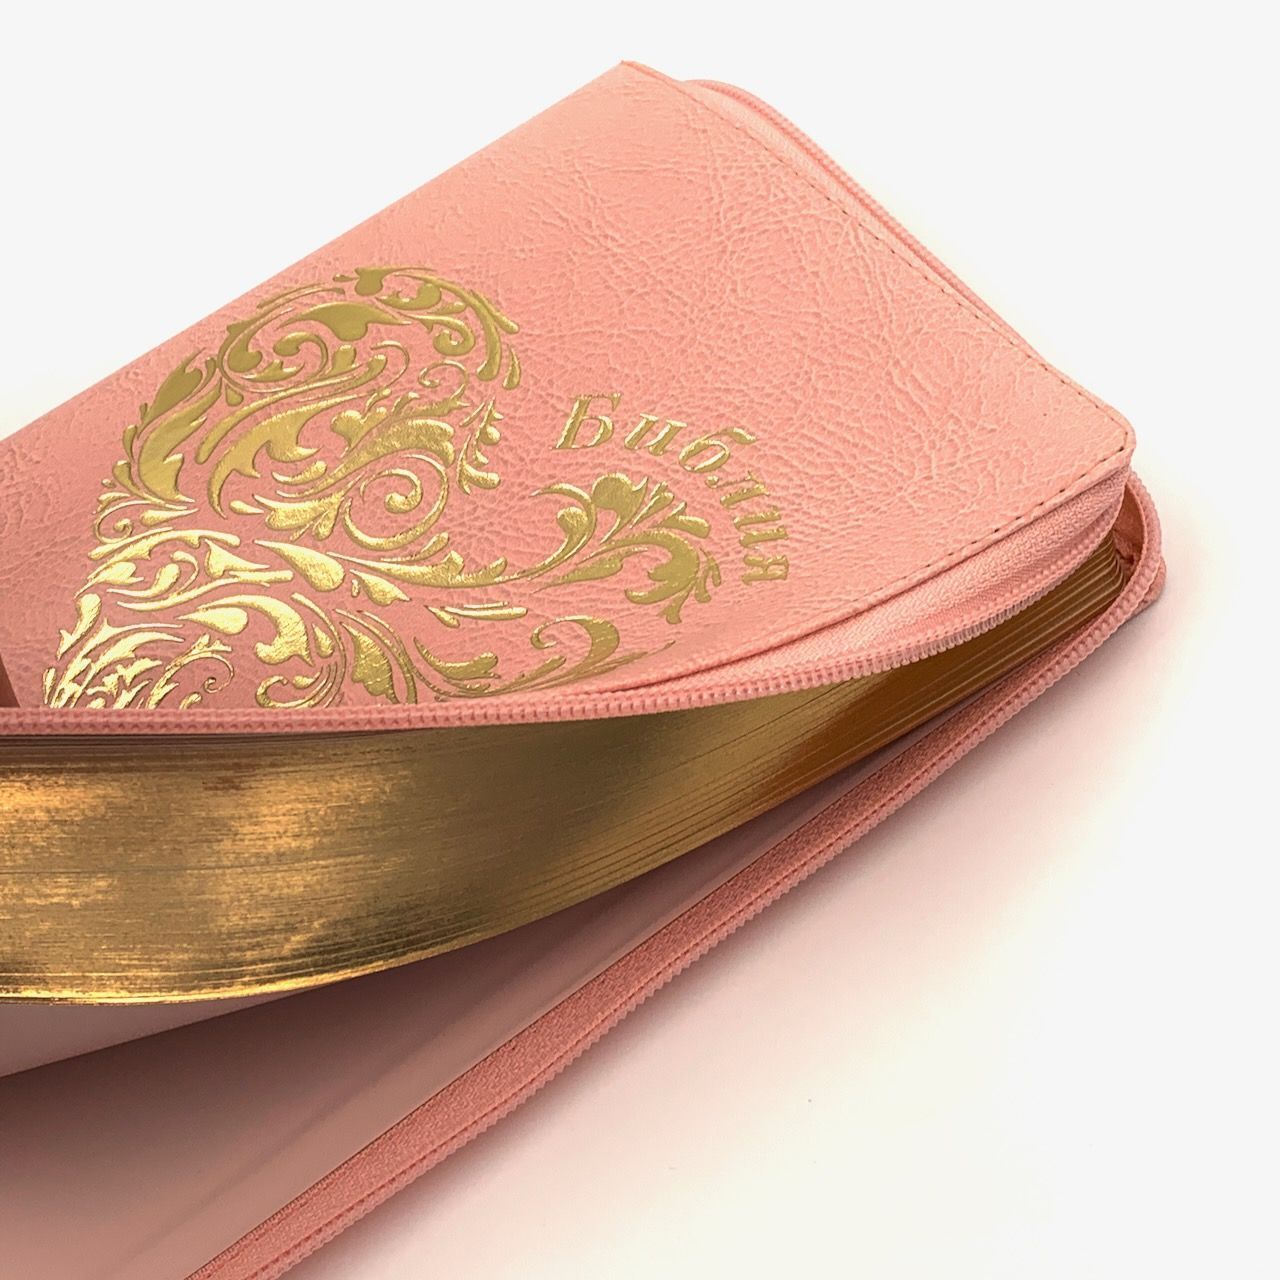 Библия 055z код I1b дизайн "золотое сердце", переплет из искусственной кожи на молнии, цвет розовый, средний формат, 143*220 мм,